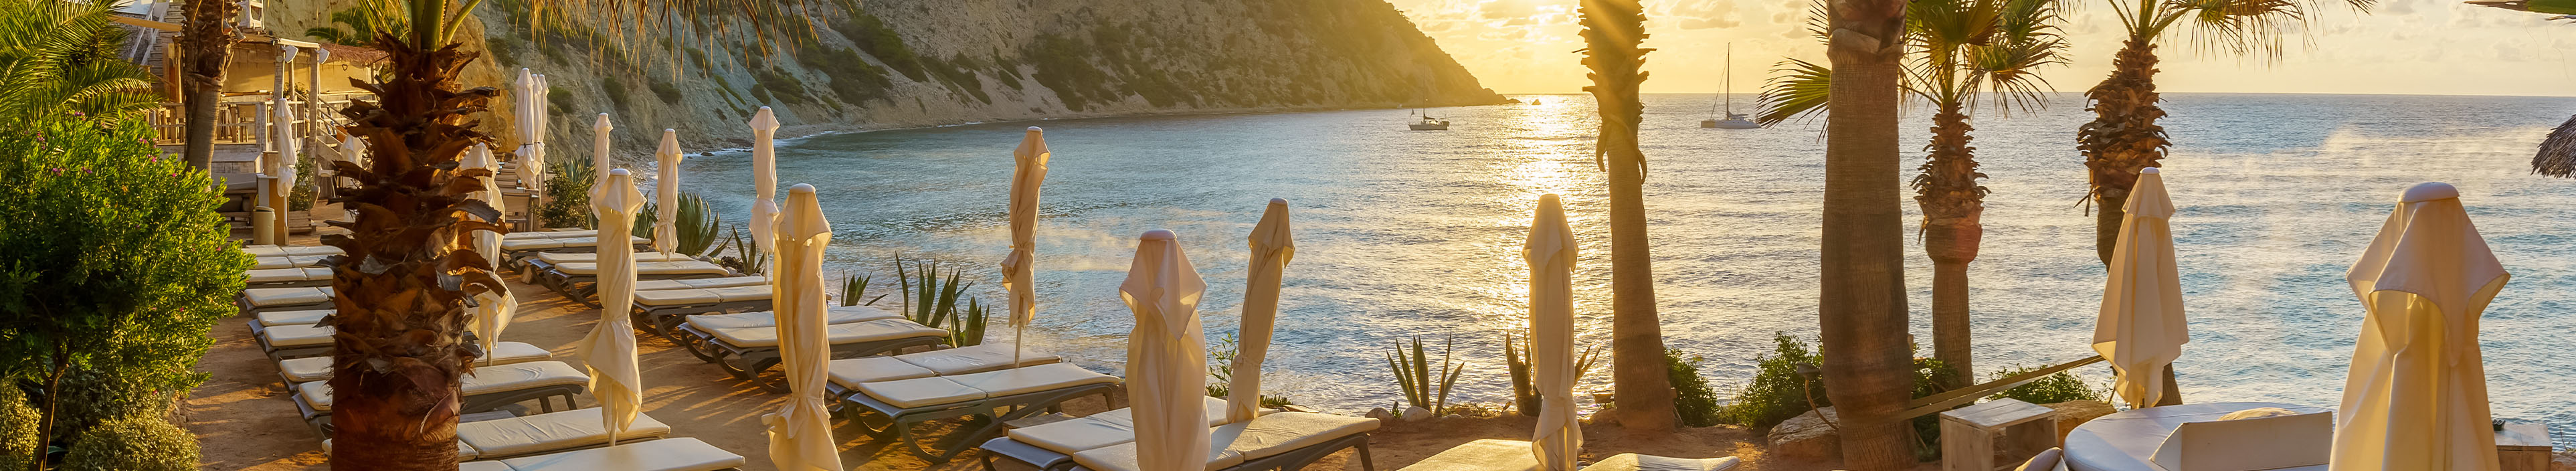 Liegestühle und Sonnenschirme, Palmen an einem Strand auf Ibiza.